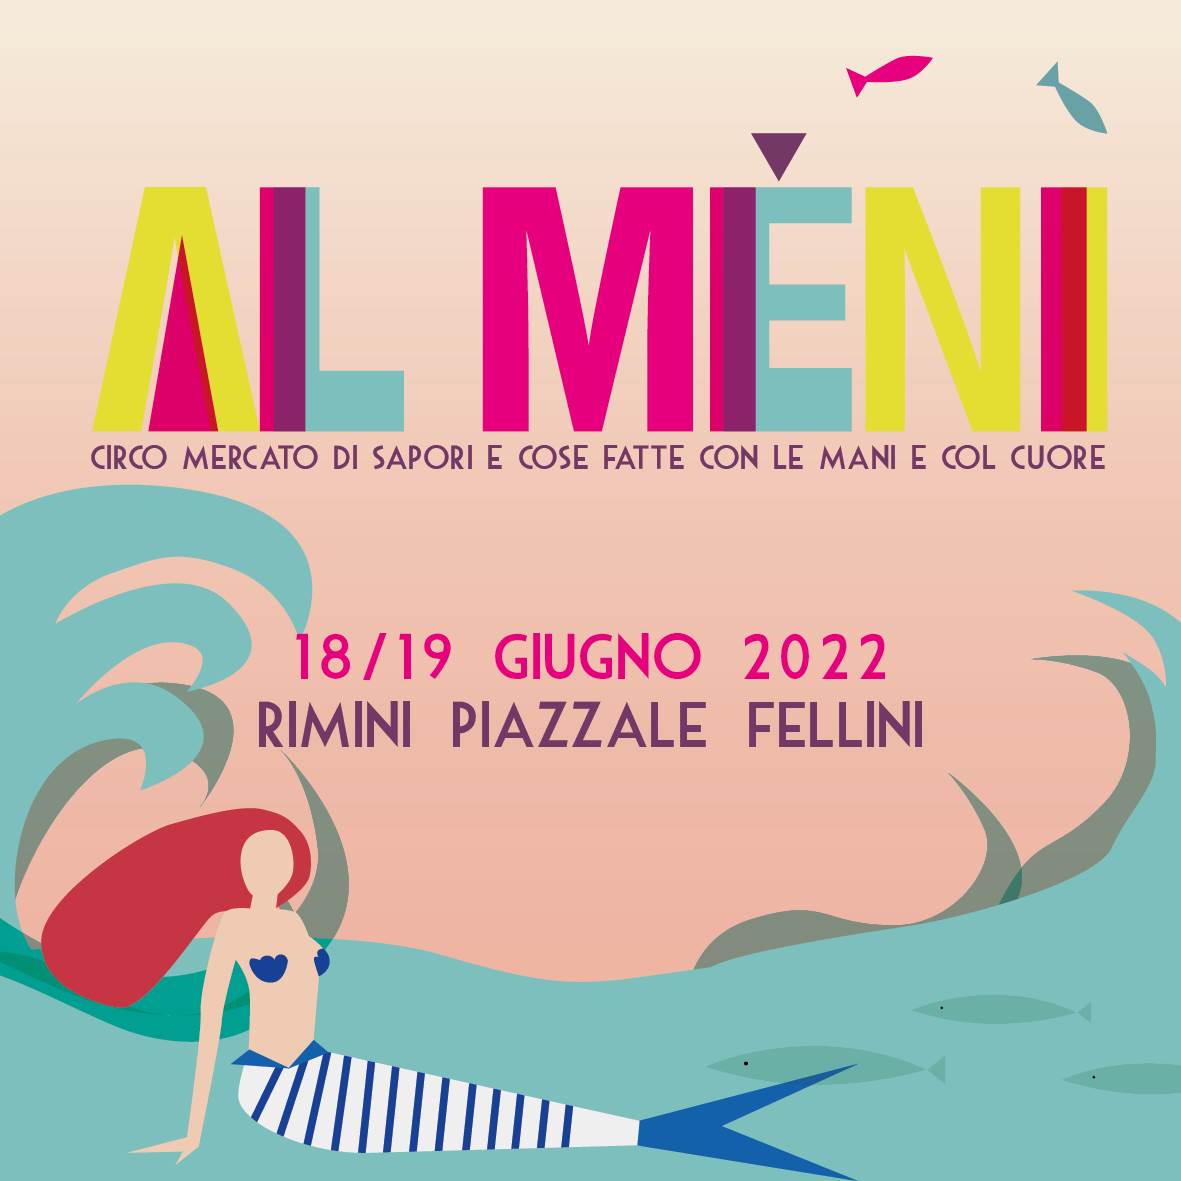 Al Meni Rimini 2022